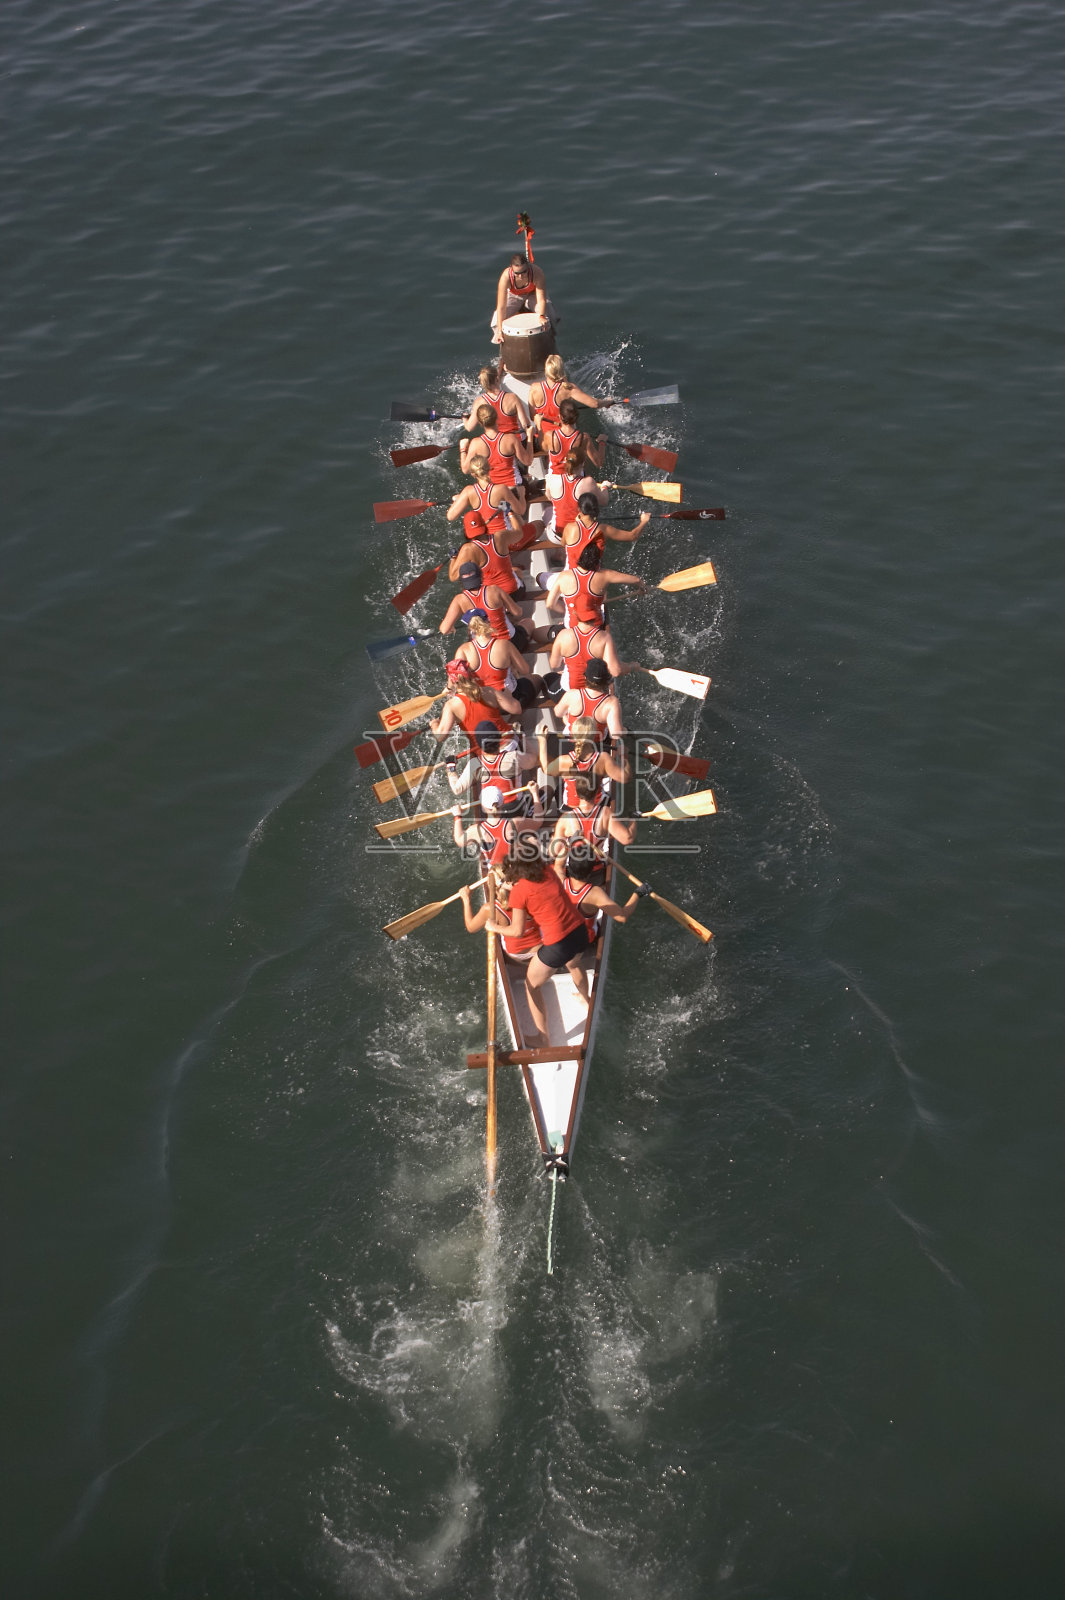 一艘由二十名穿着红上衣的人划着的大船照片摄影图片